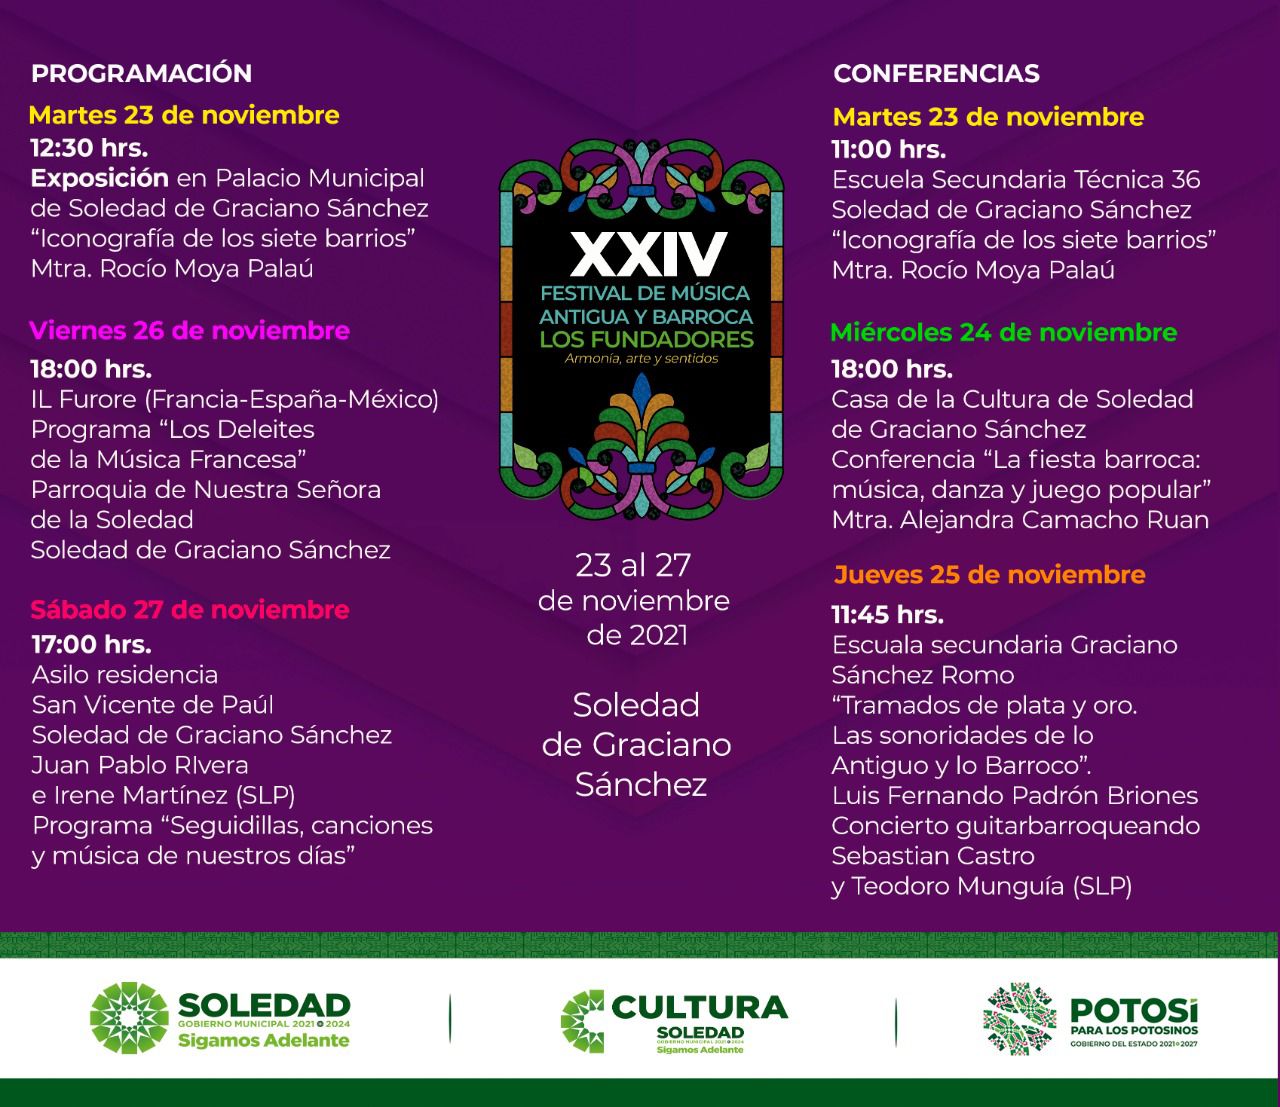 Ayuntamiento de Soledad invita al público para que asistan al vigésimo cuarto Festival de Música Antigua y Barroca “Los Fundadores”, que organiza la SECULT